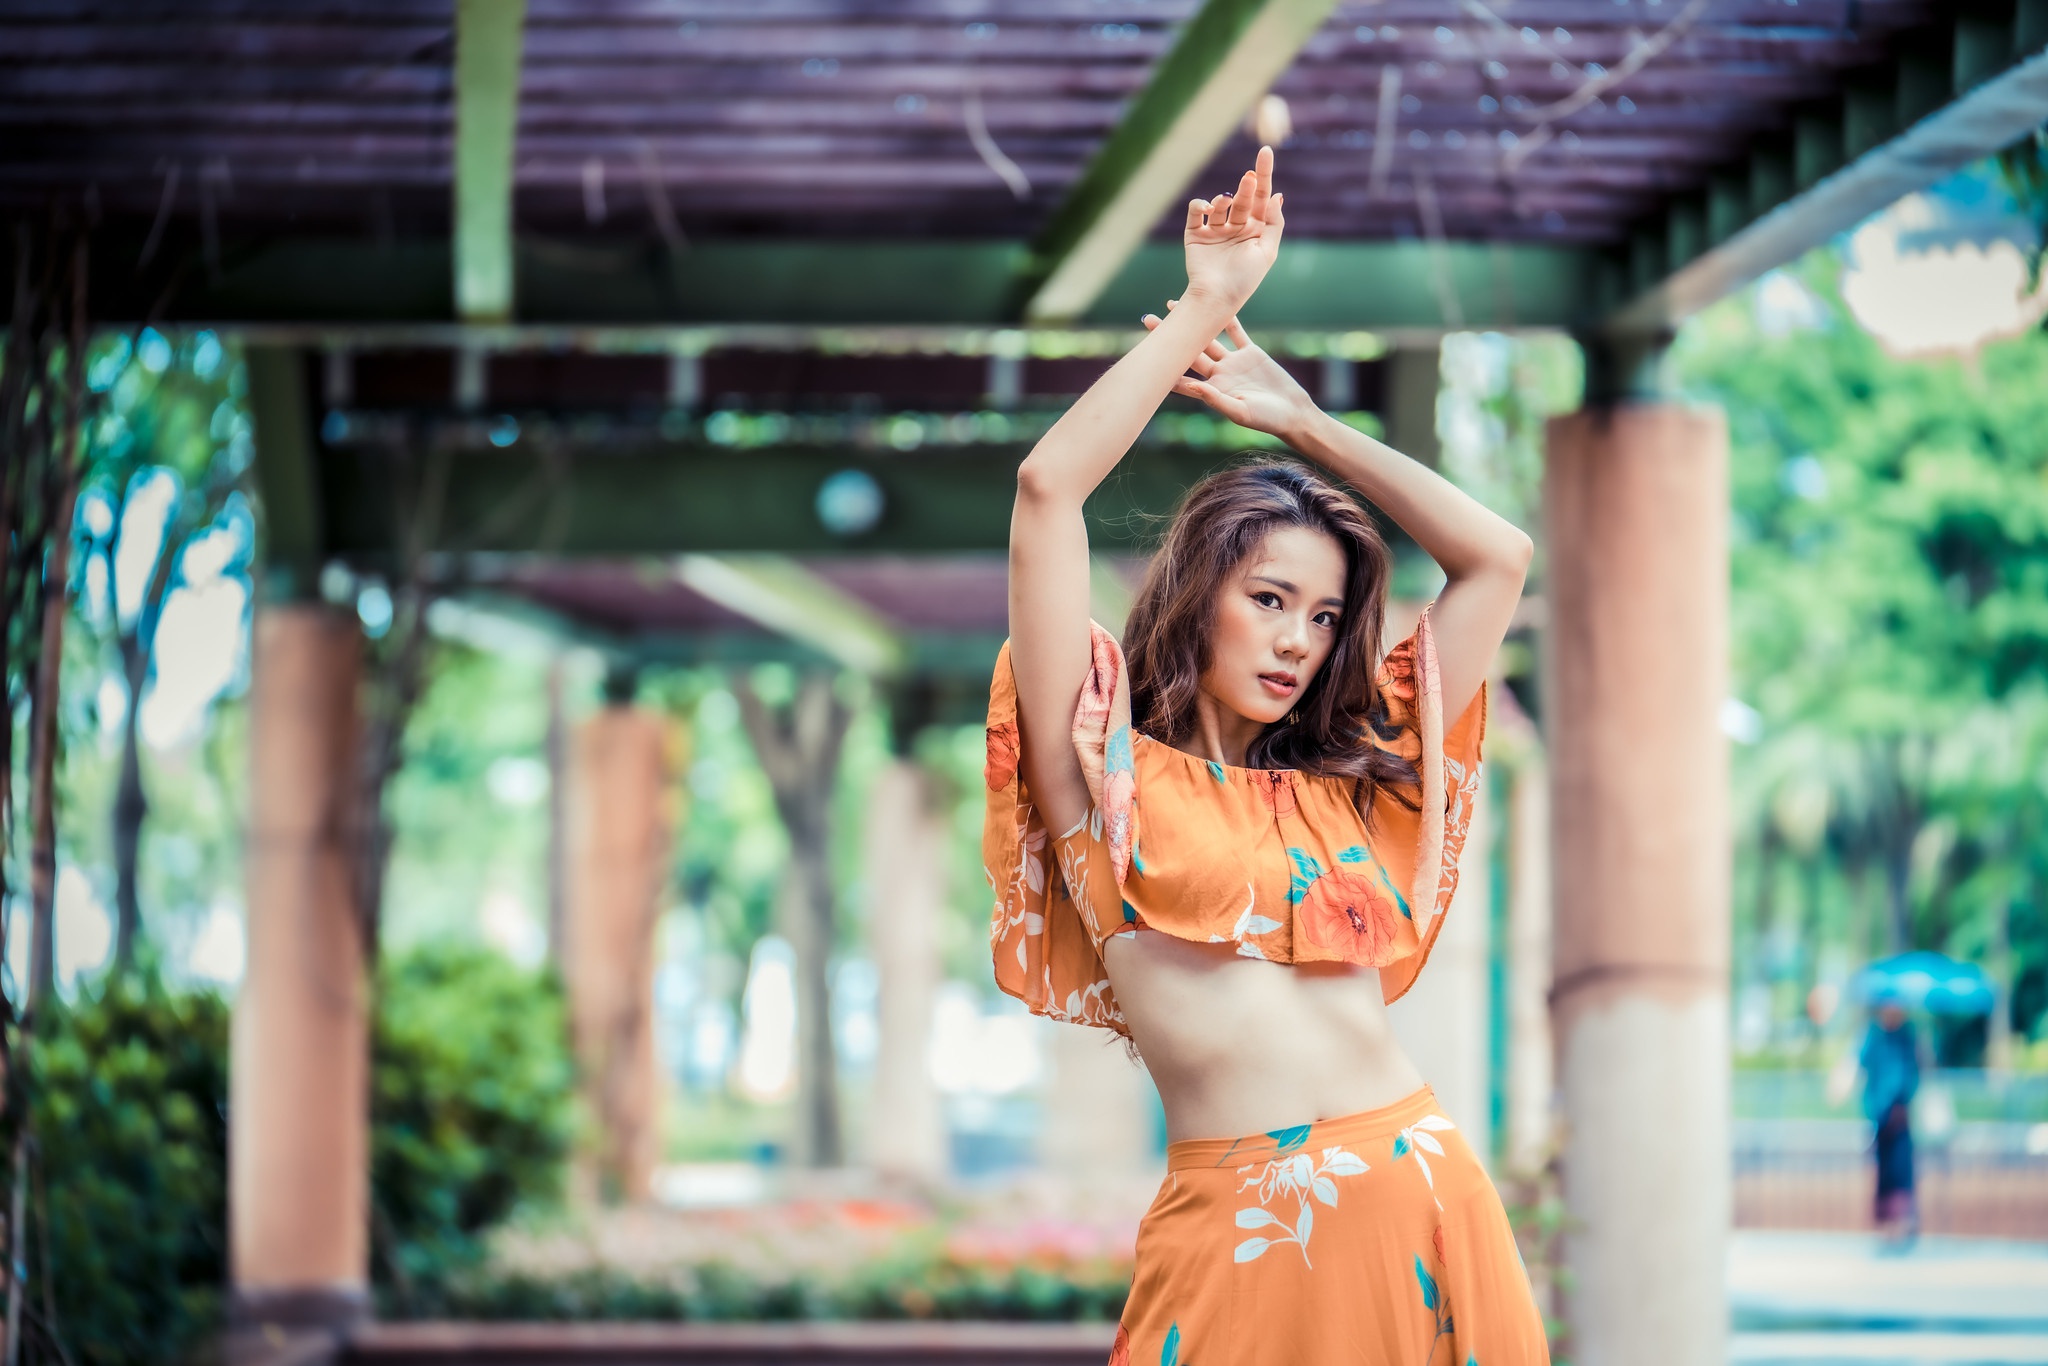 Asian Model Women Long Hair Brunette Skirt Shirt Flower Dress Column Wood Bridge Trees Bushes 2048x1366